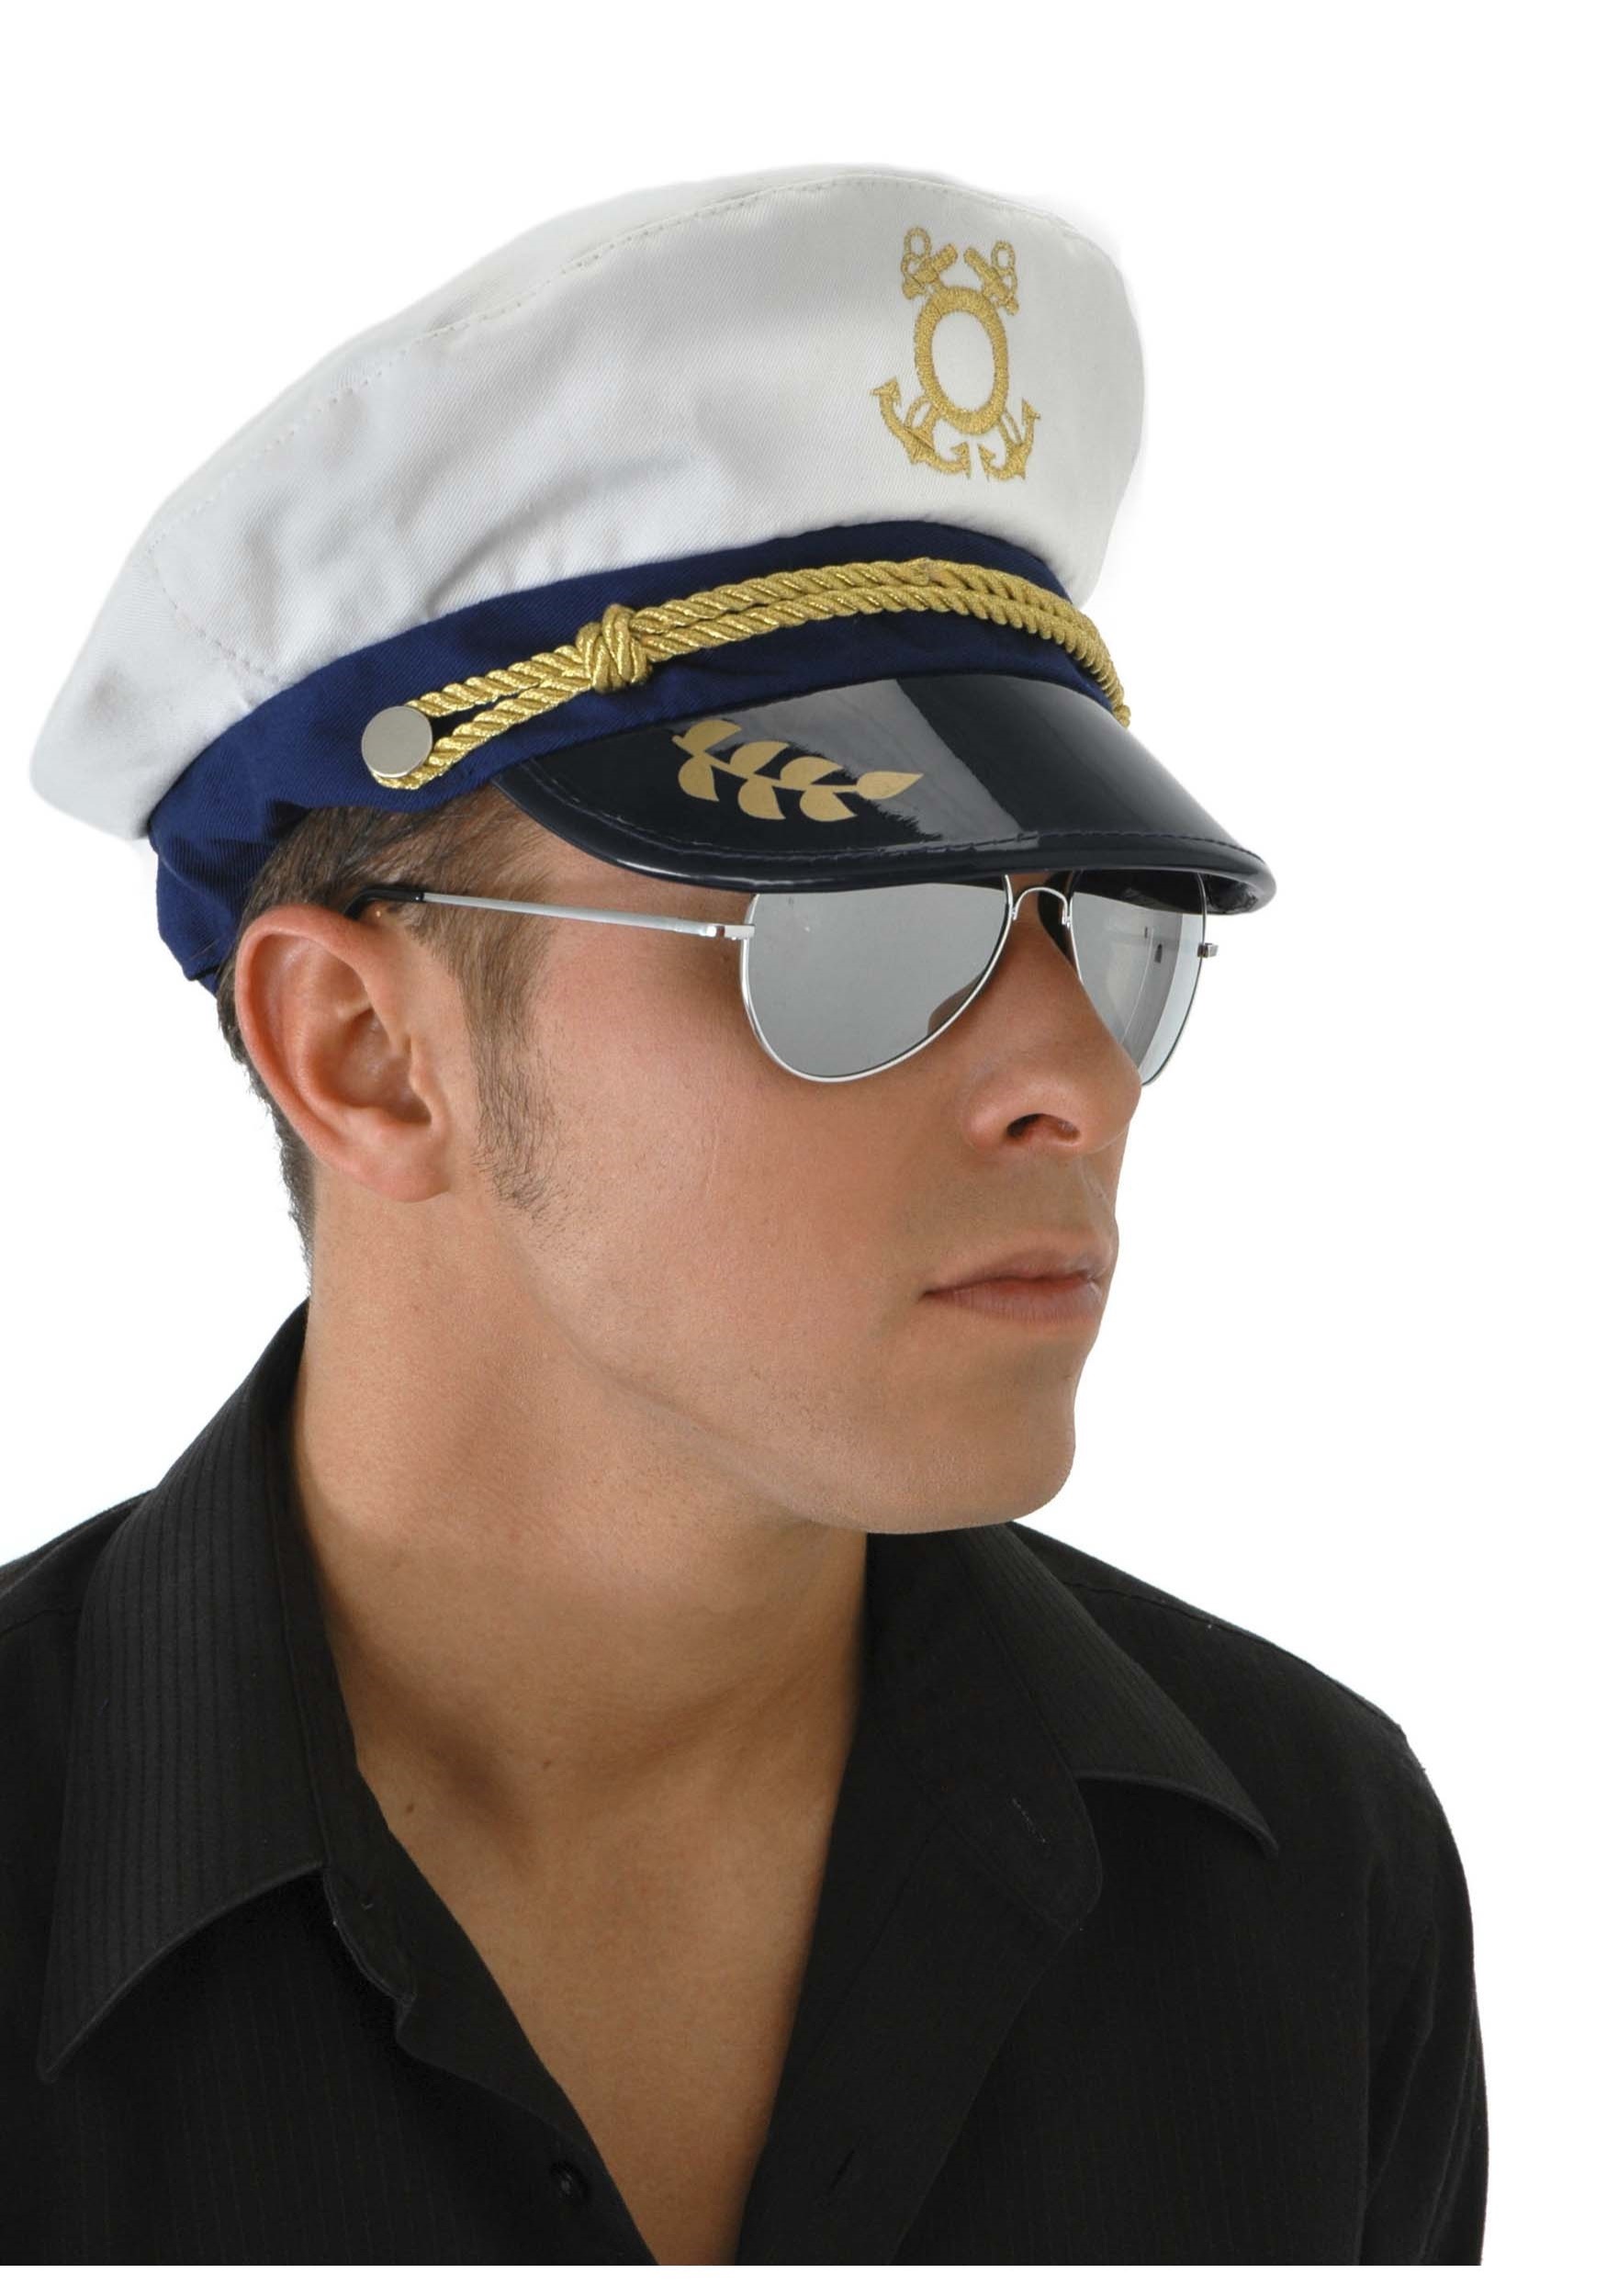 Sailor Captain Men's Costume Hat